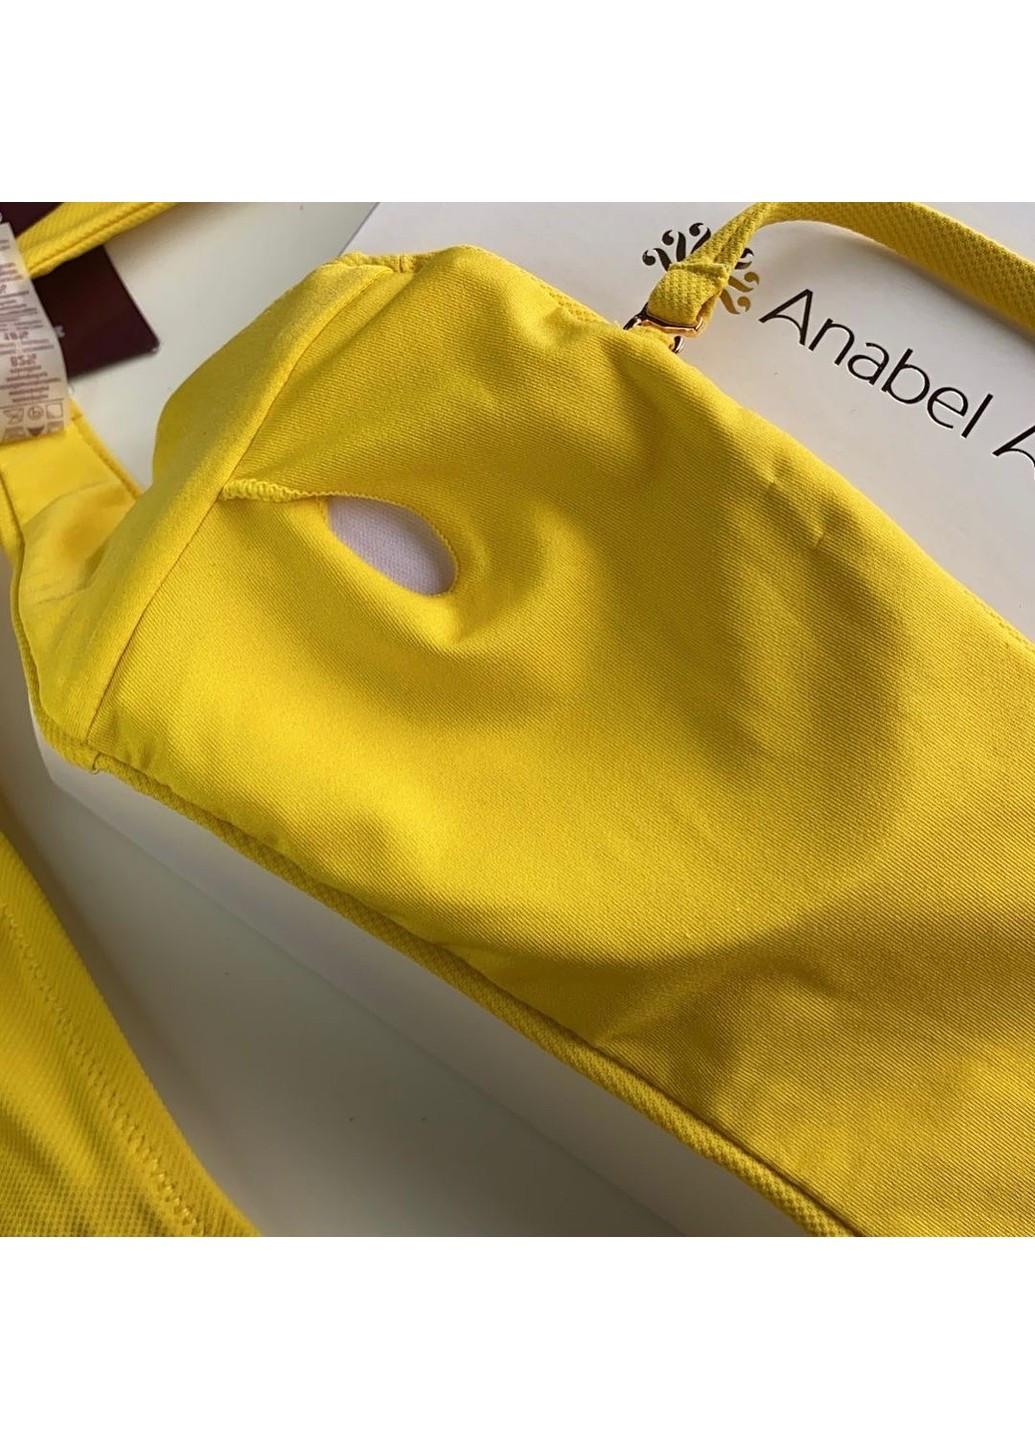 Желтый летний купальник бандо 994-045/994-233 желтый с плавками на завязках Anabel Arto